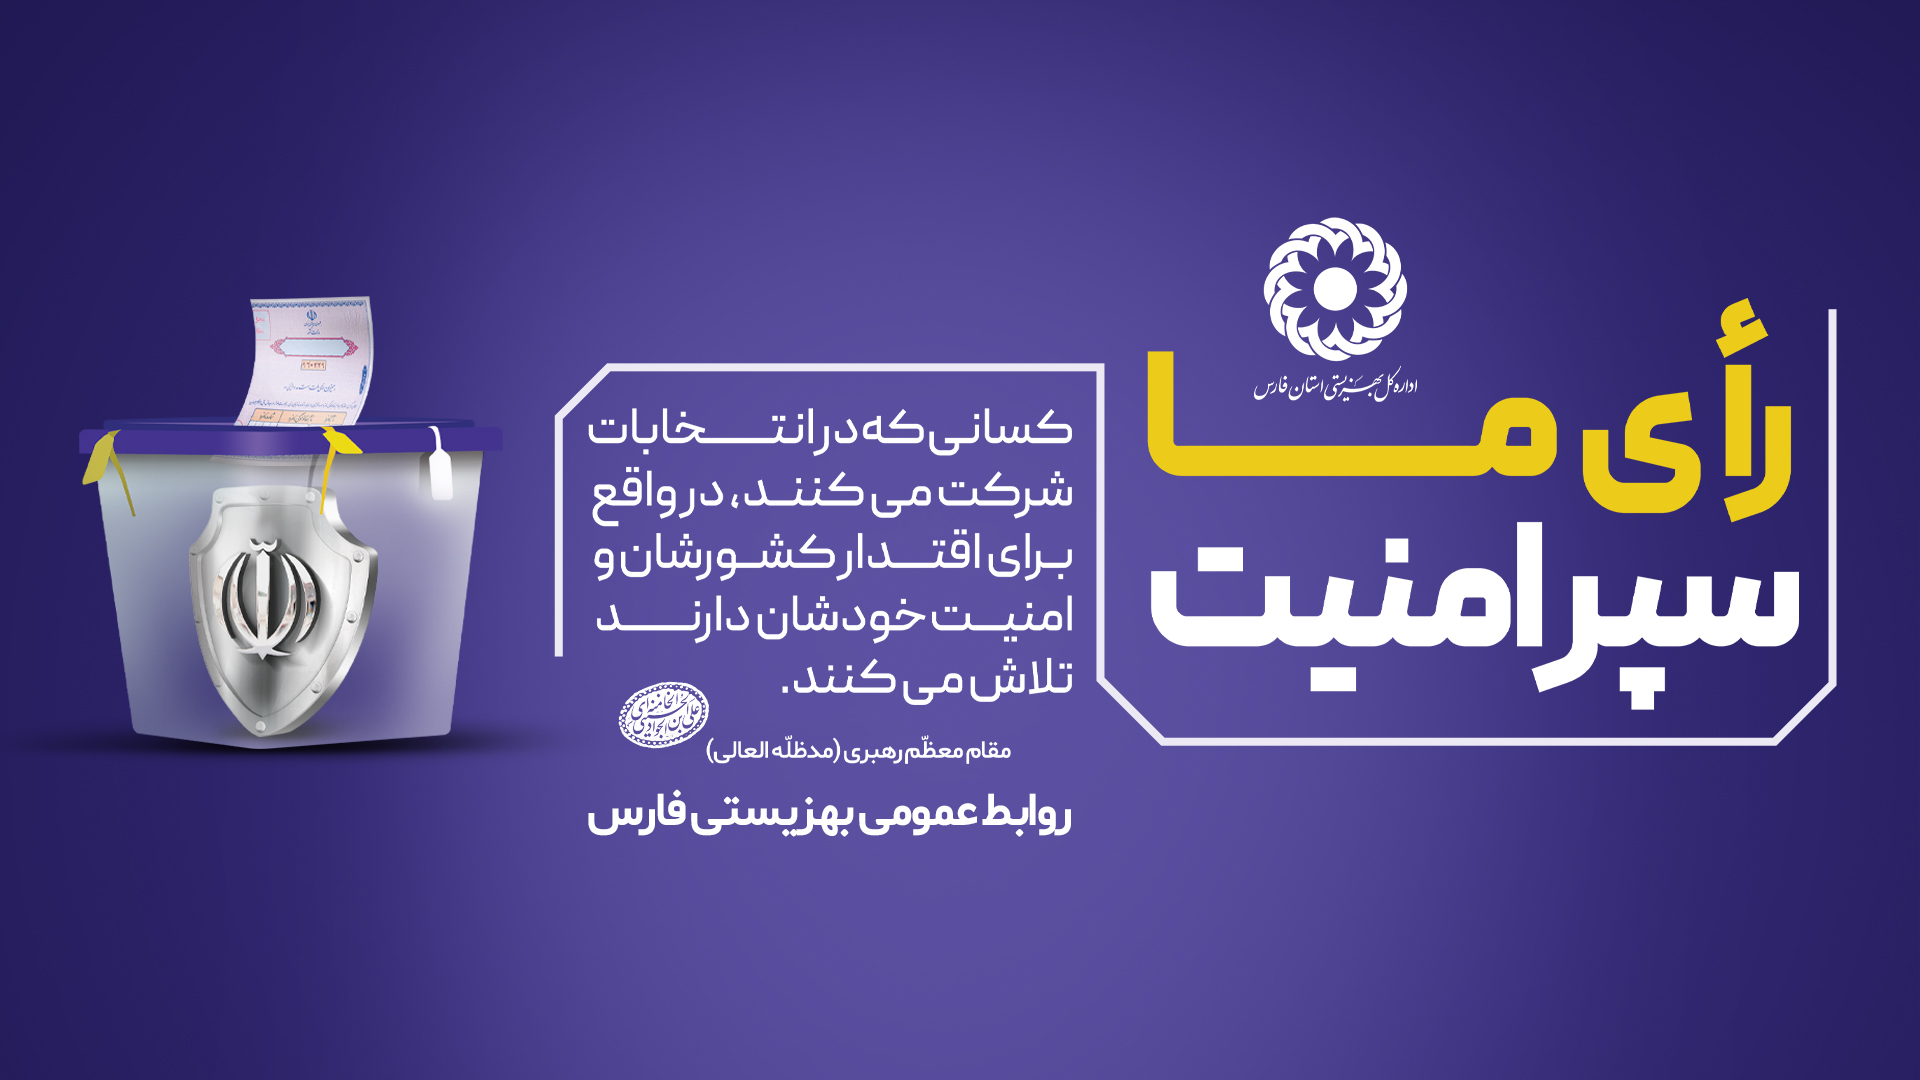 دعوت مدیر کل بهزیستی فارس از خانواده بهزیستی جهت حضور پرشور در انتخابات